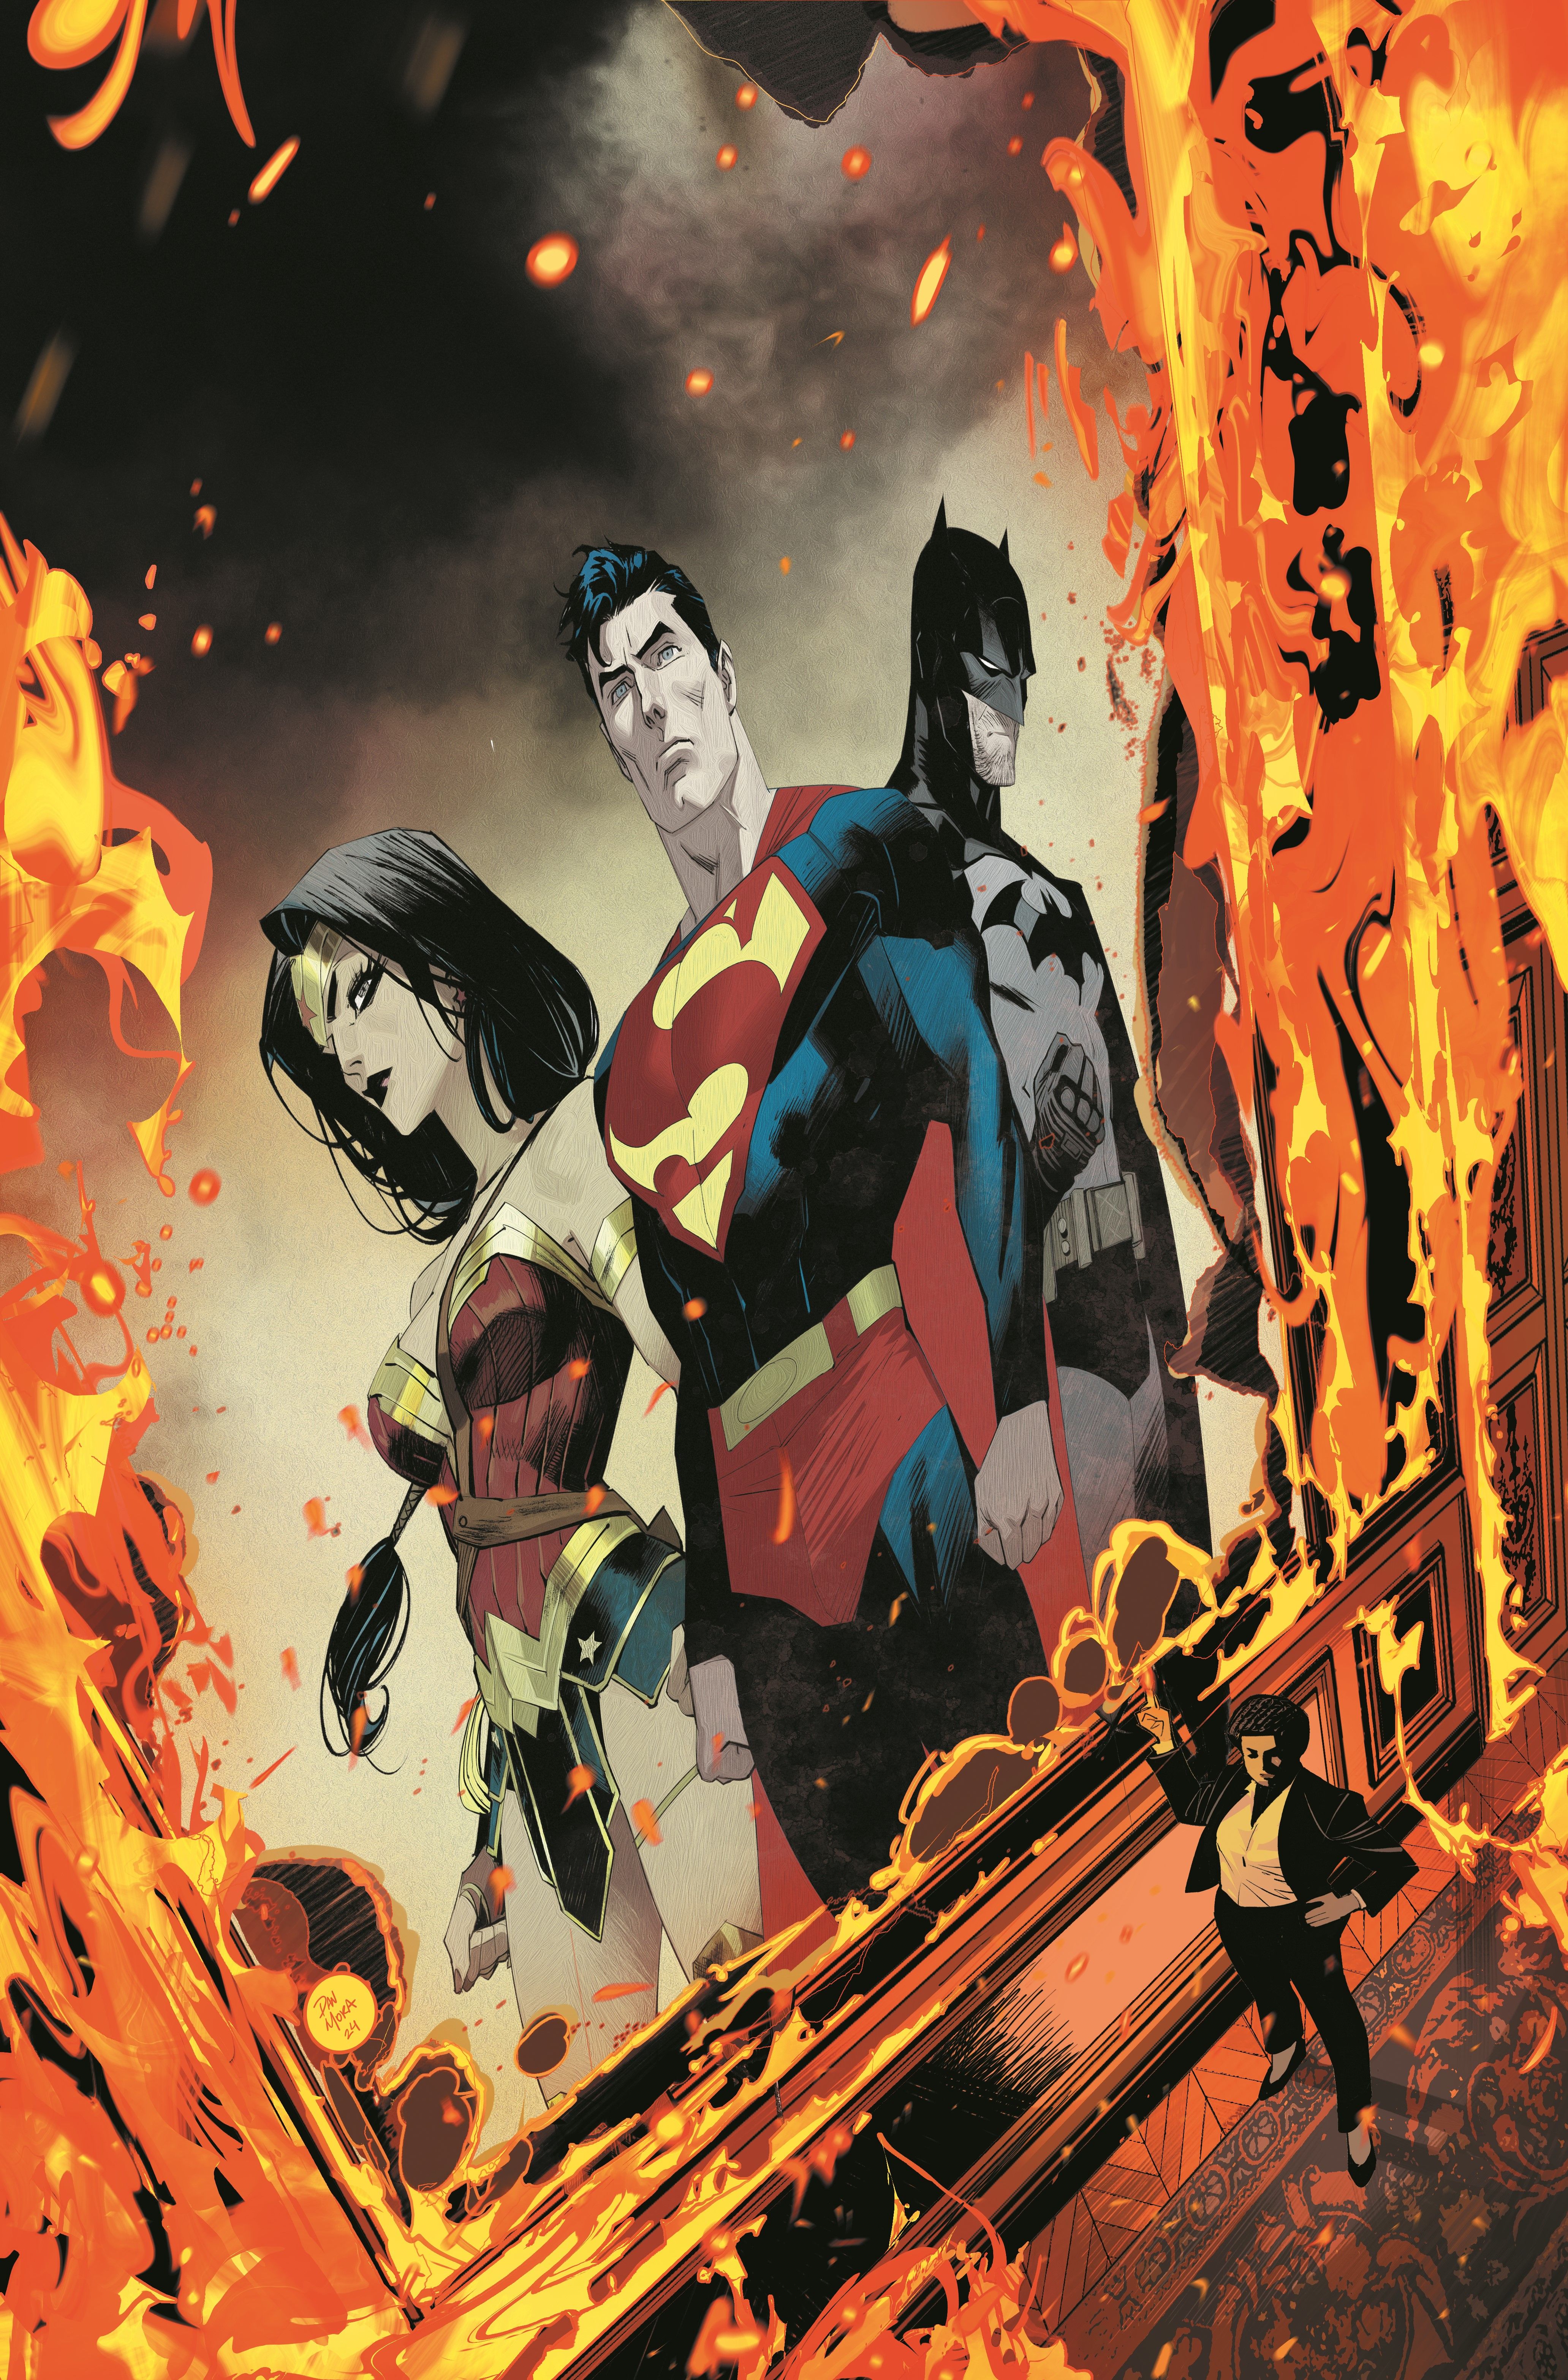 Absolute Power Ground Zero 1 Capa principal: Amanda Waller está em frente a um retrato em chamas da Mulher Maravilha, Superman e Batman.